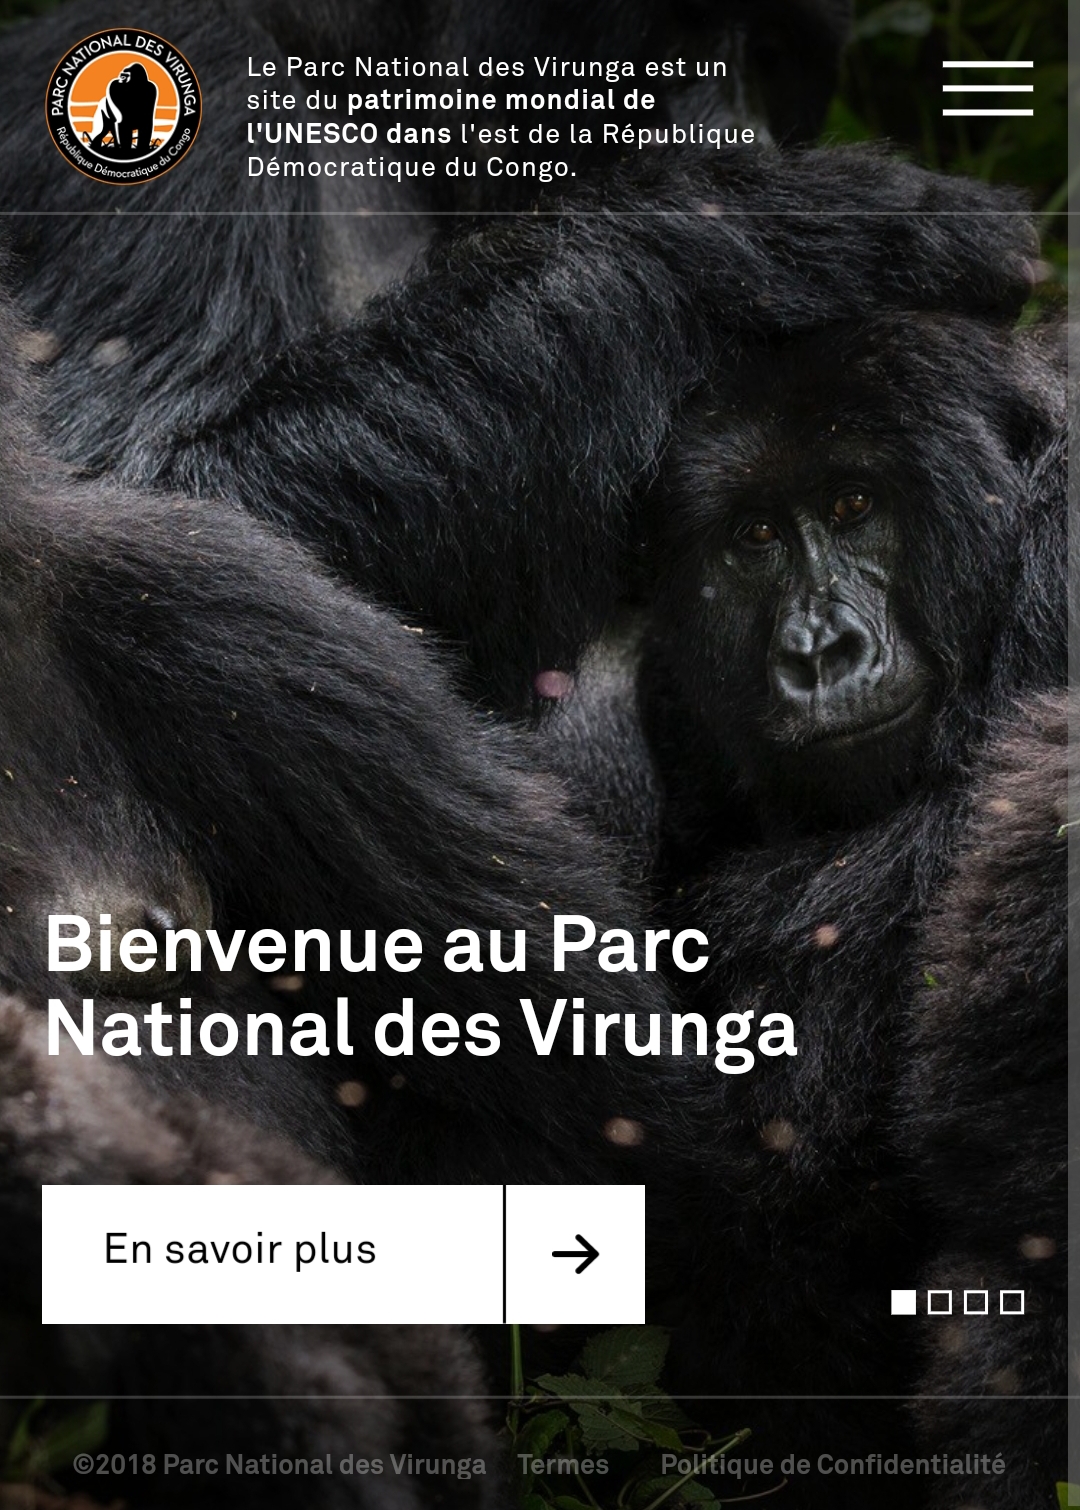 Découvrez le nouveau site Internet de la Fondation Virunga